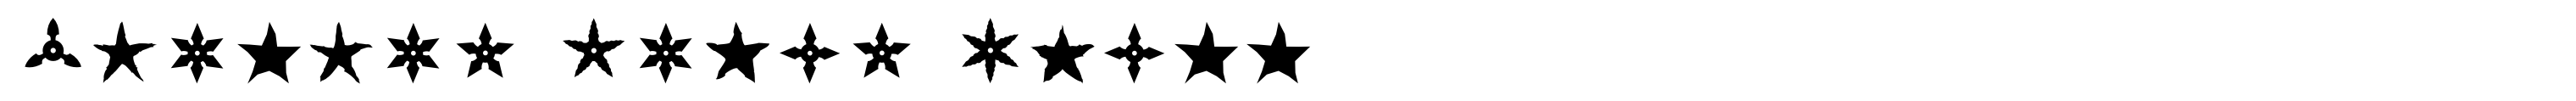 Altemus Stars Three